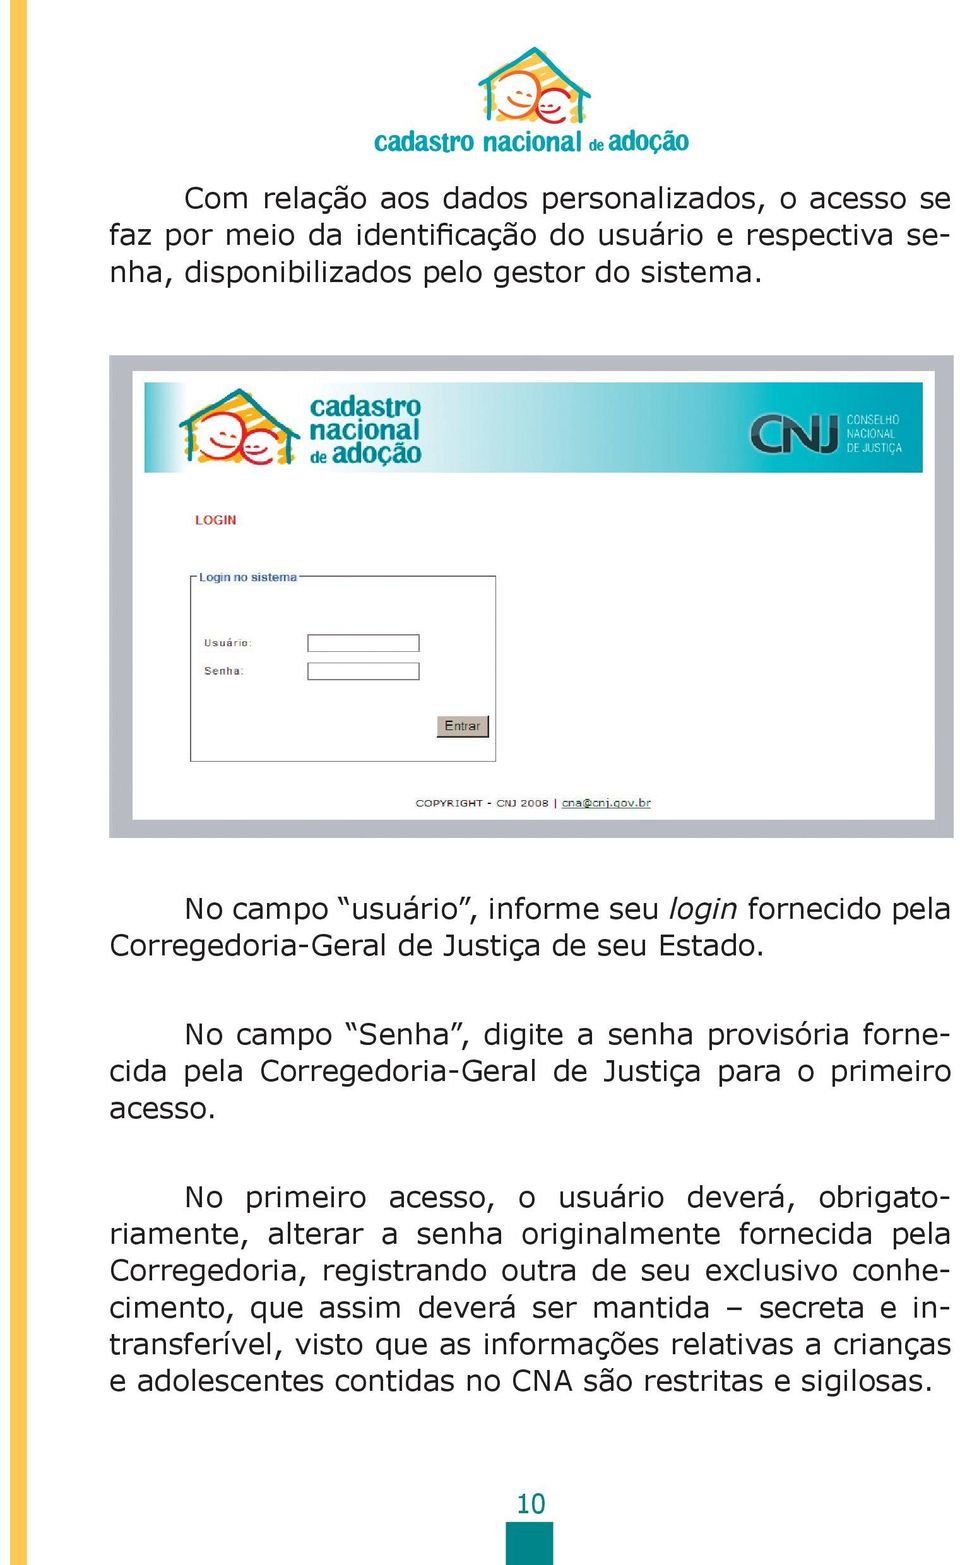 No campo Senha, digite a senha provisória fornecida pela Corregedoria-Geral de Justiça para o primeiro acesso.